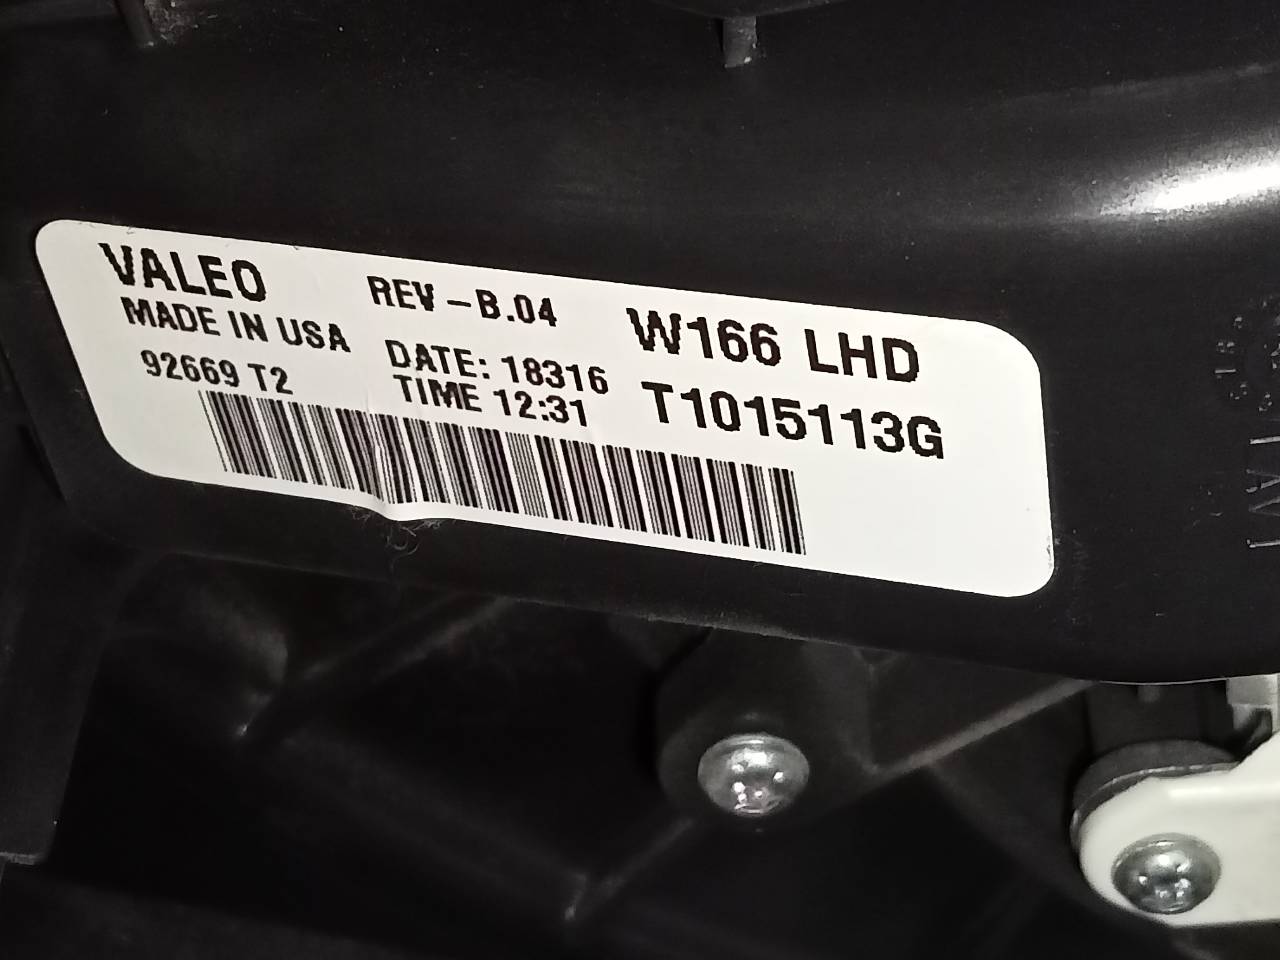 MERCEDES-BENZ GLE W166 (2015-2018) Heater Blower Fan T1015113G, 92669T2 24056372